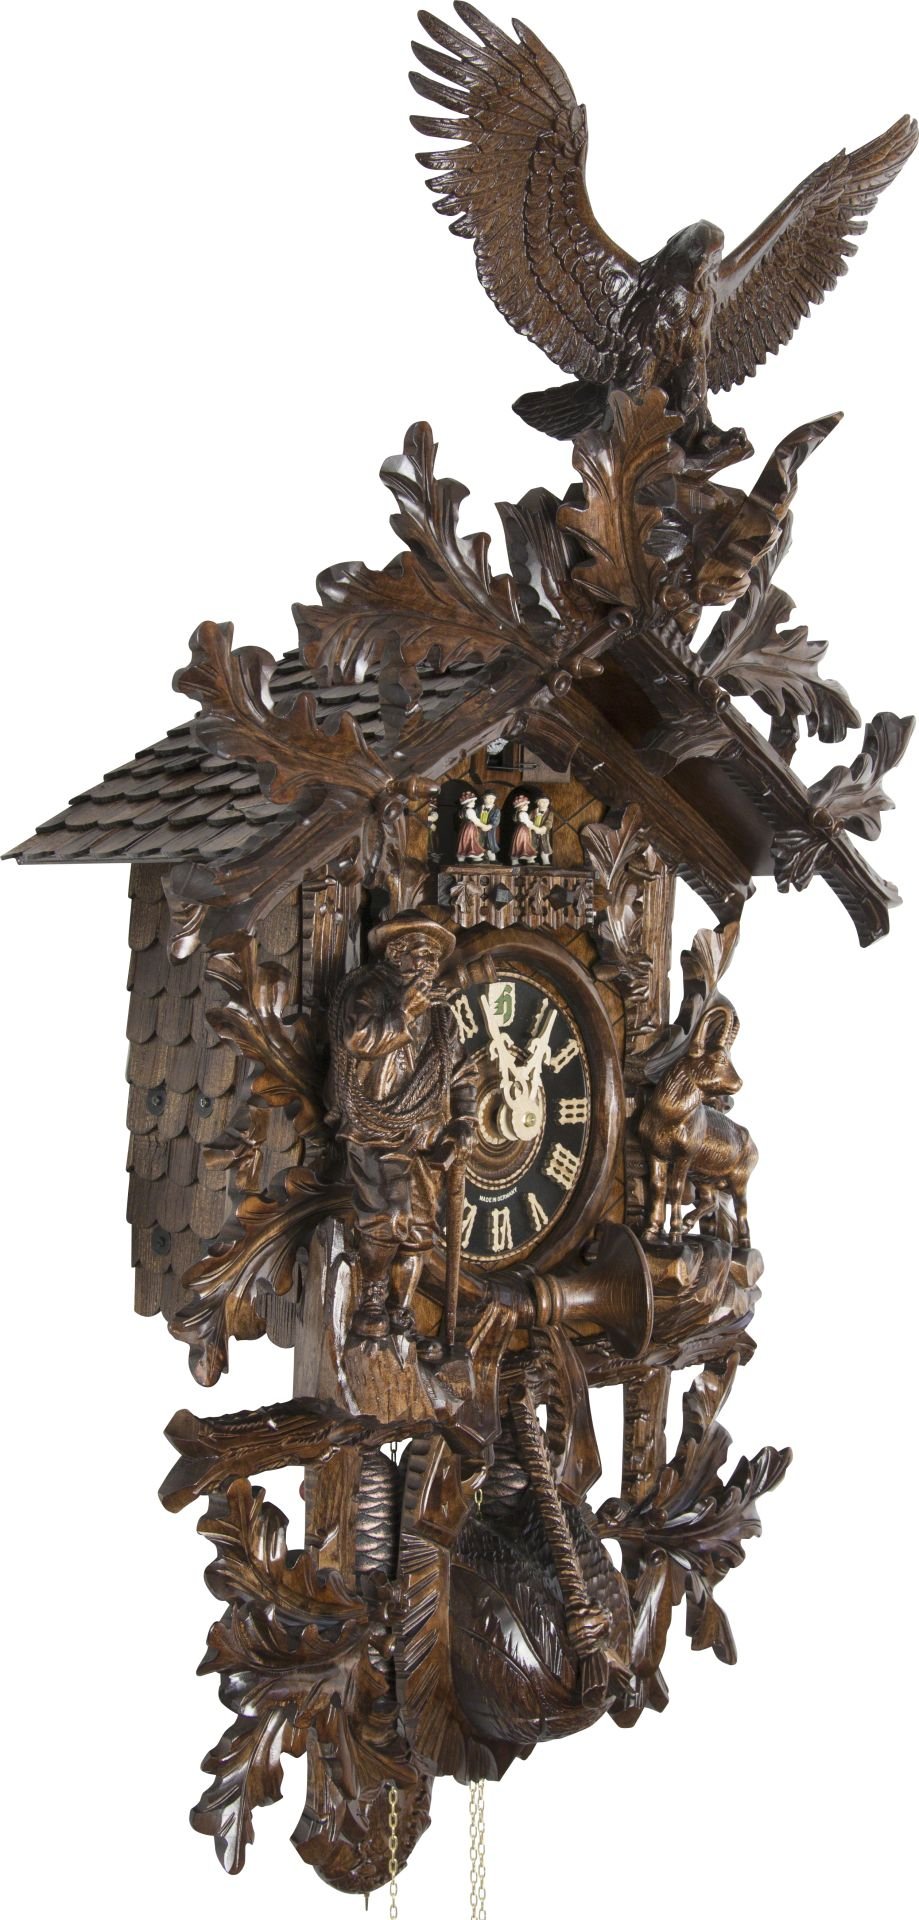 Reloj de cuco estilo “Madera tallada” movimiento mecánico de 8 días 90cm de Hönes